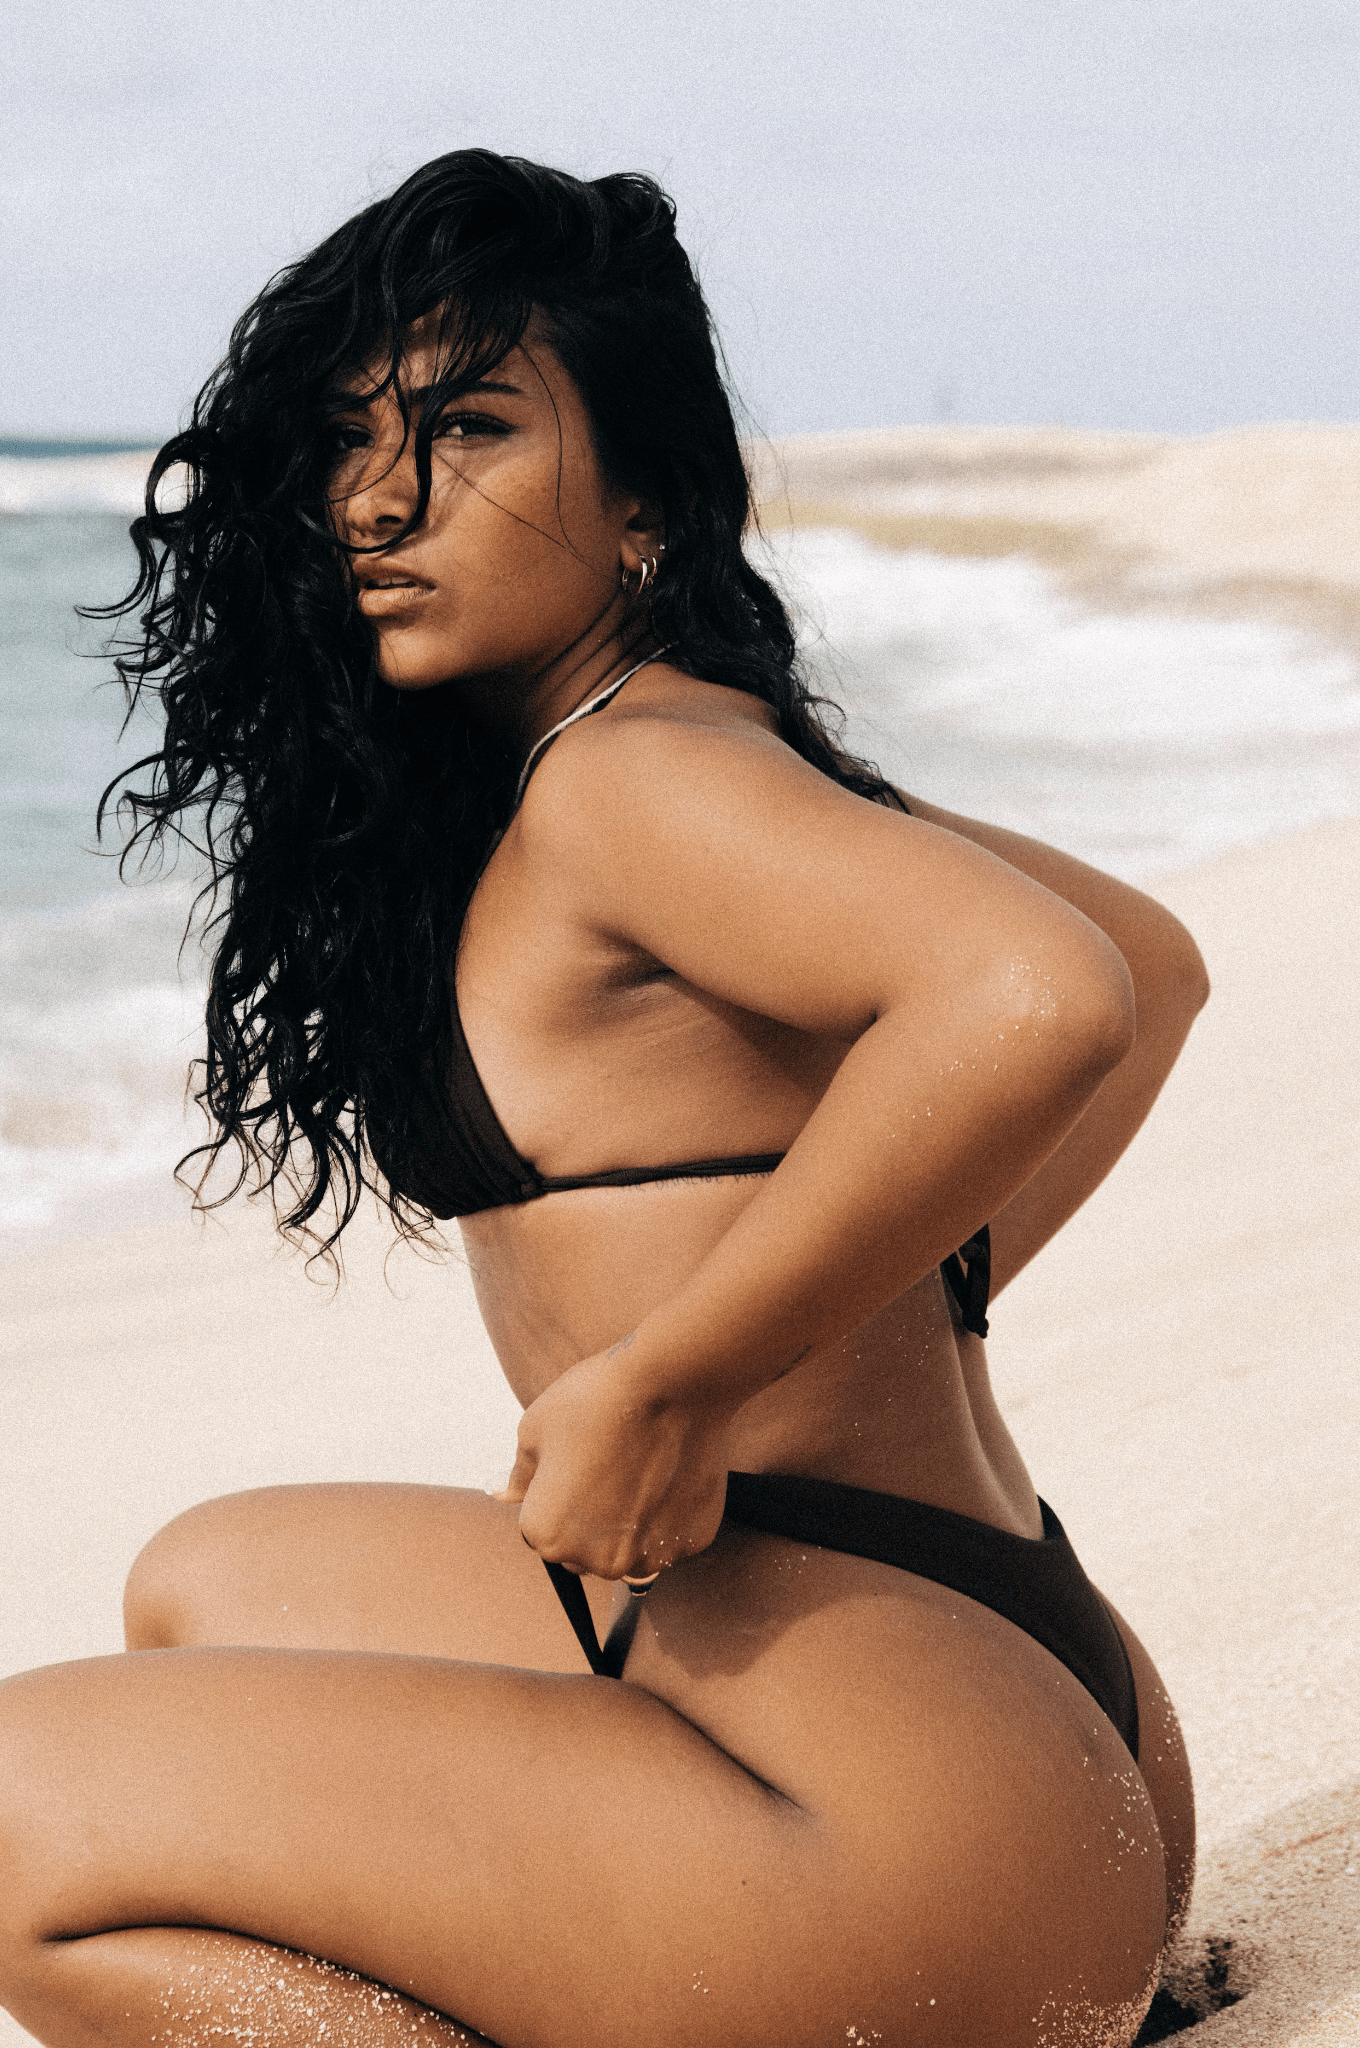 Girl kneeling beachside in the sand wearing brown bikini